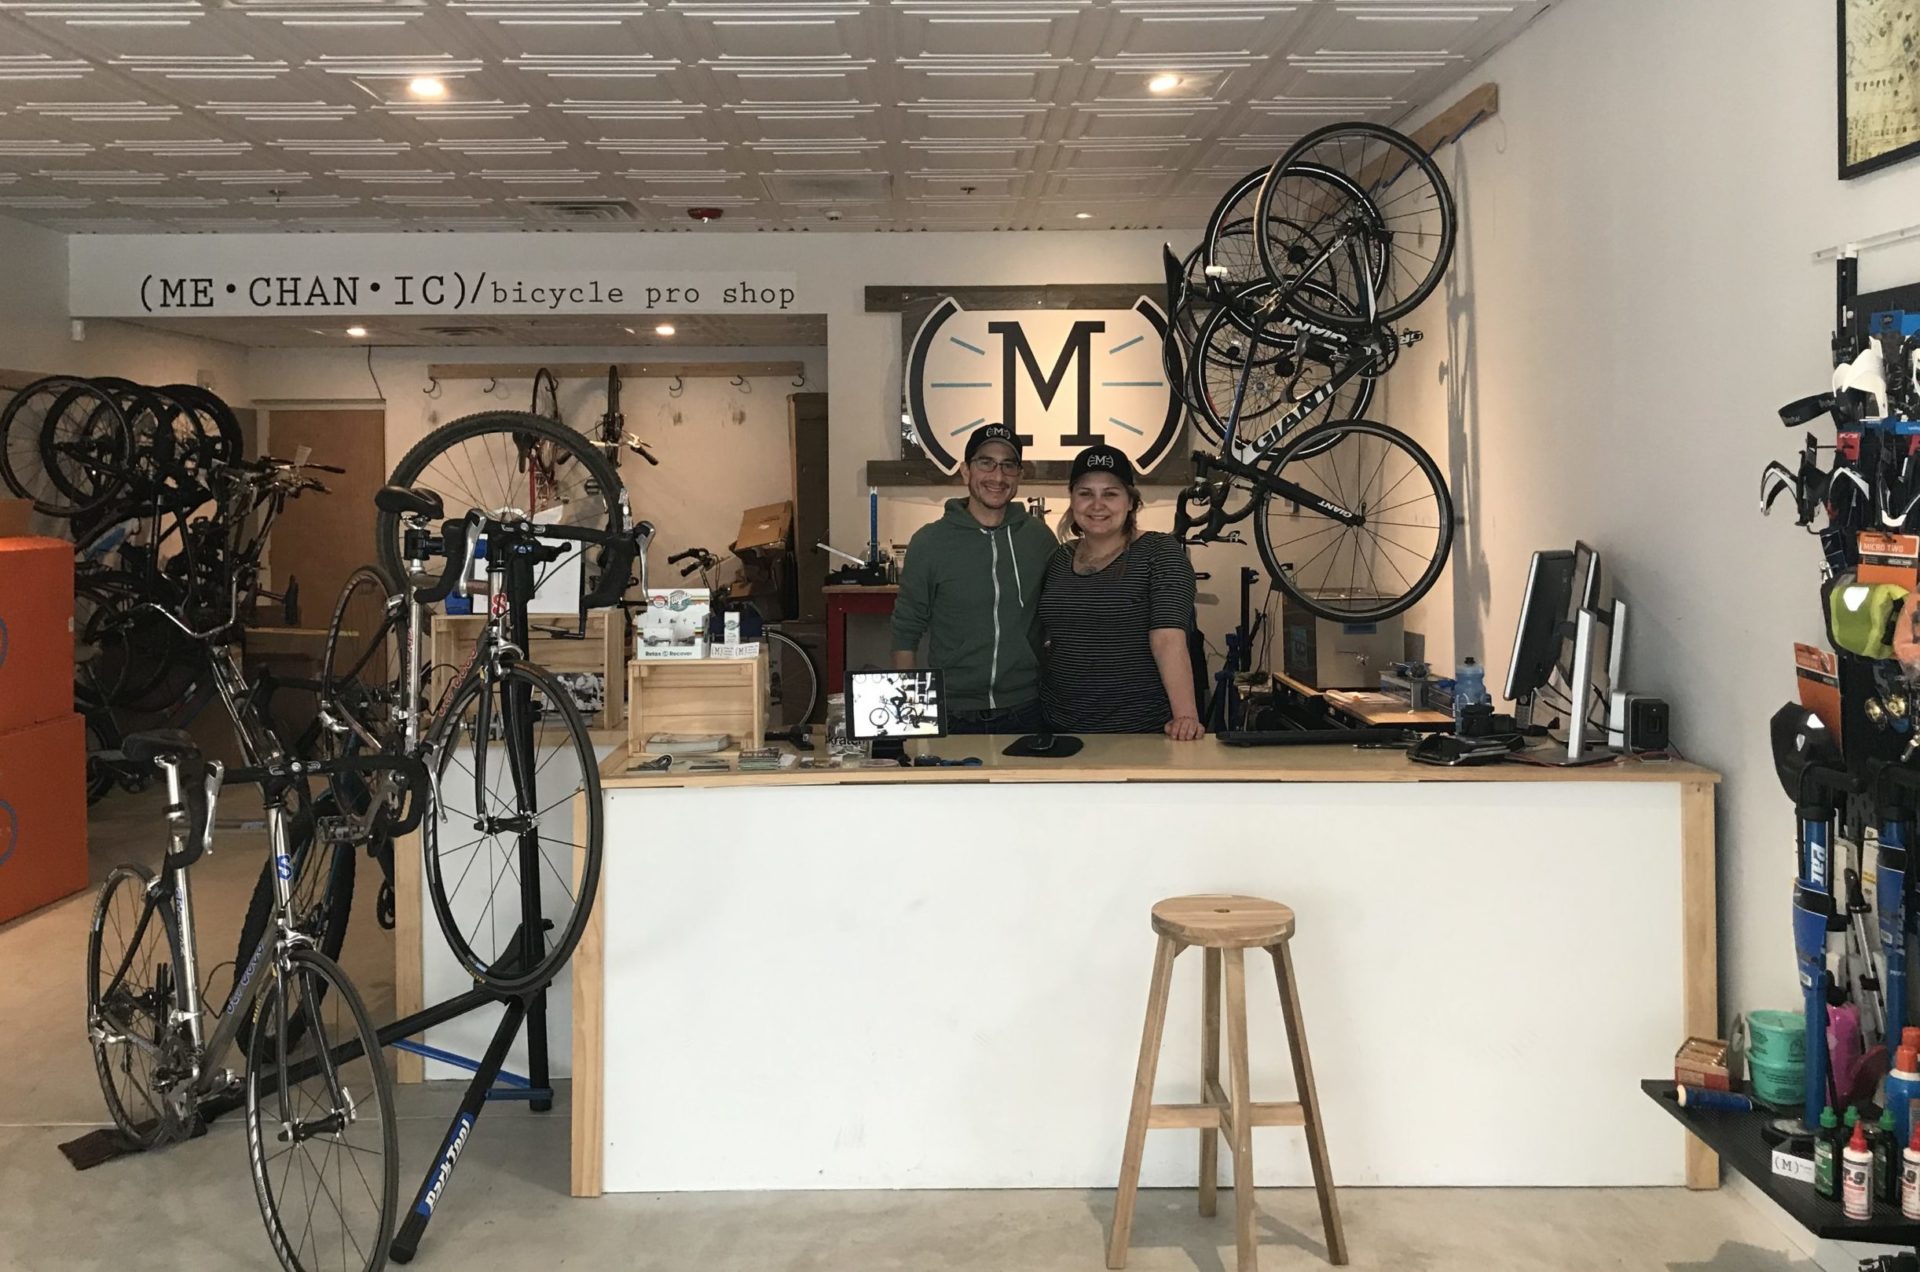 Marco Polo binnenplaats Luxe Bike Shops That Rock: MECHANIC / bicycle pro shop - Bicycle Coalition of  Greater Philadelphia